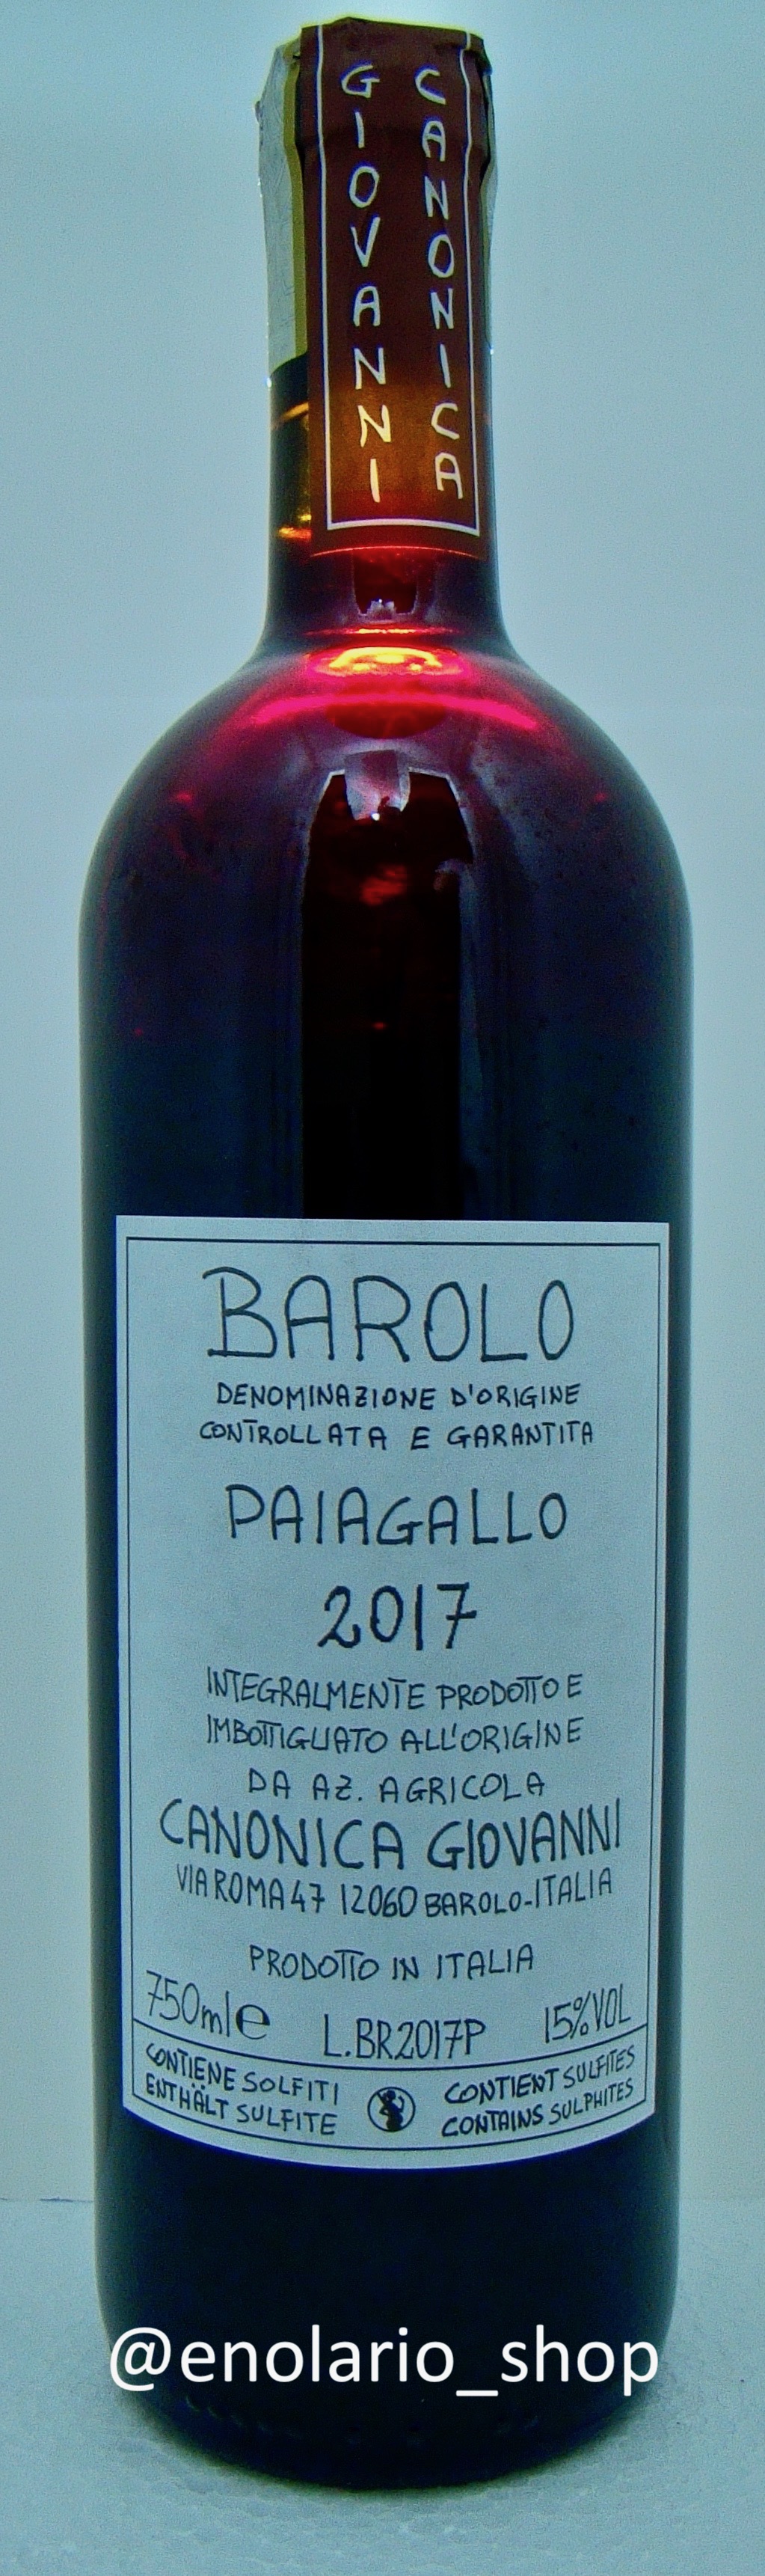 Giovanni Canonica Paiagallo 2017